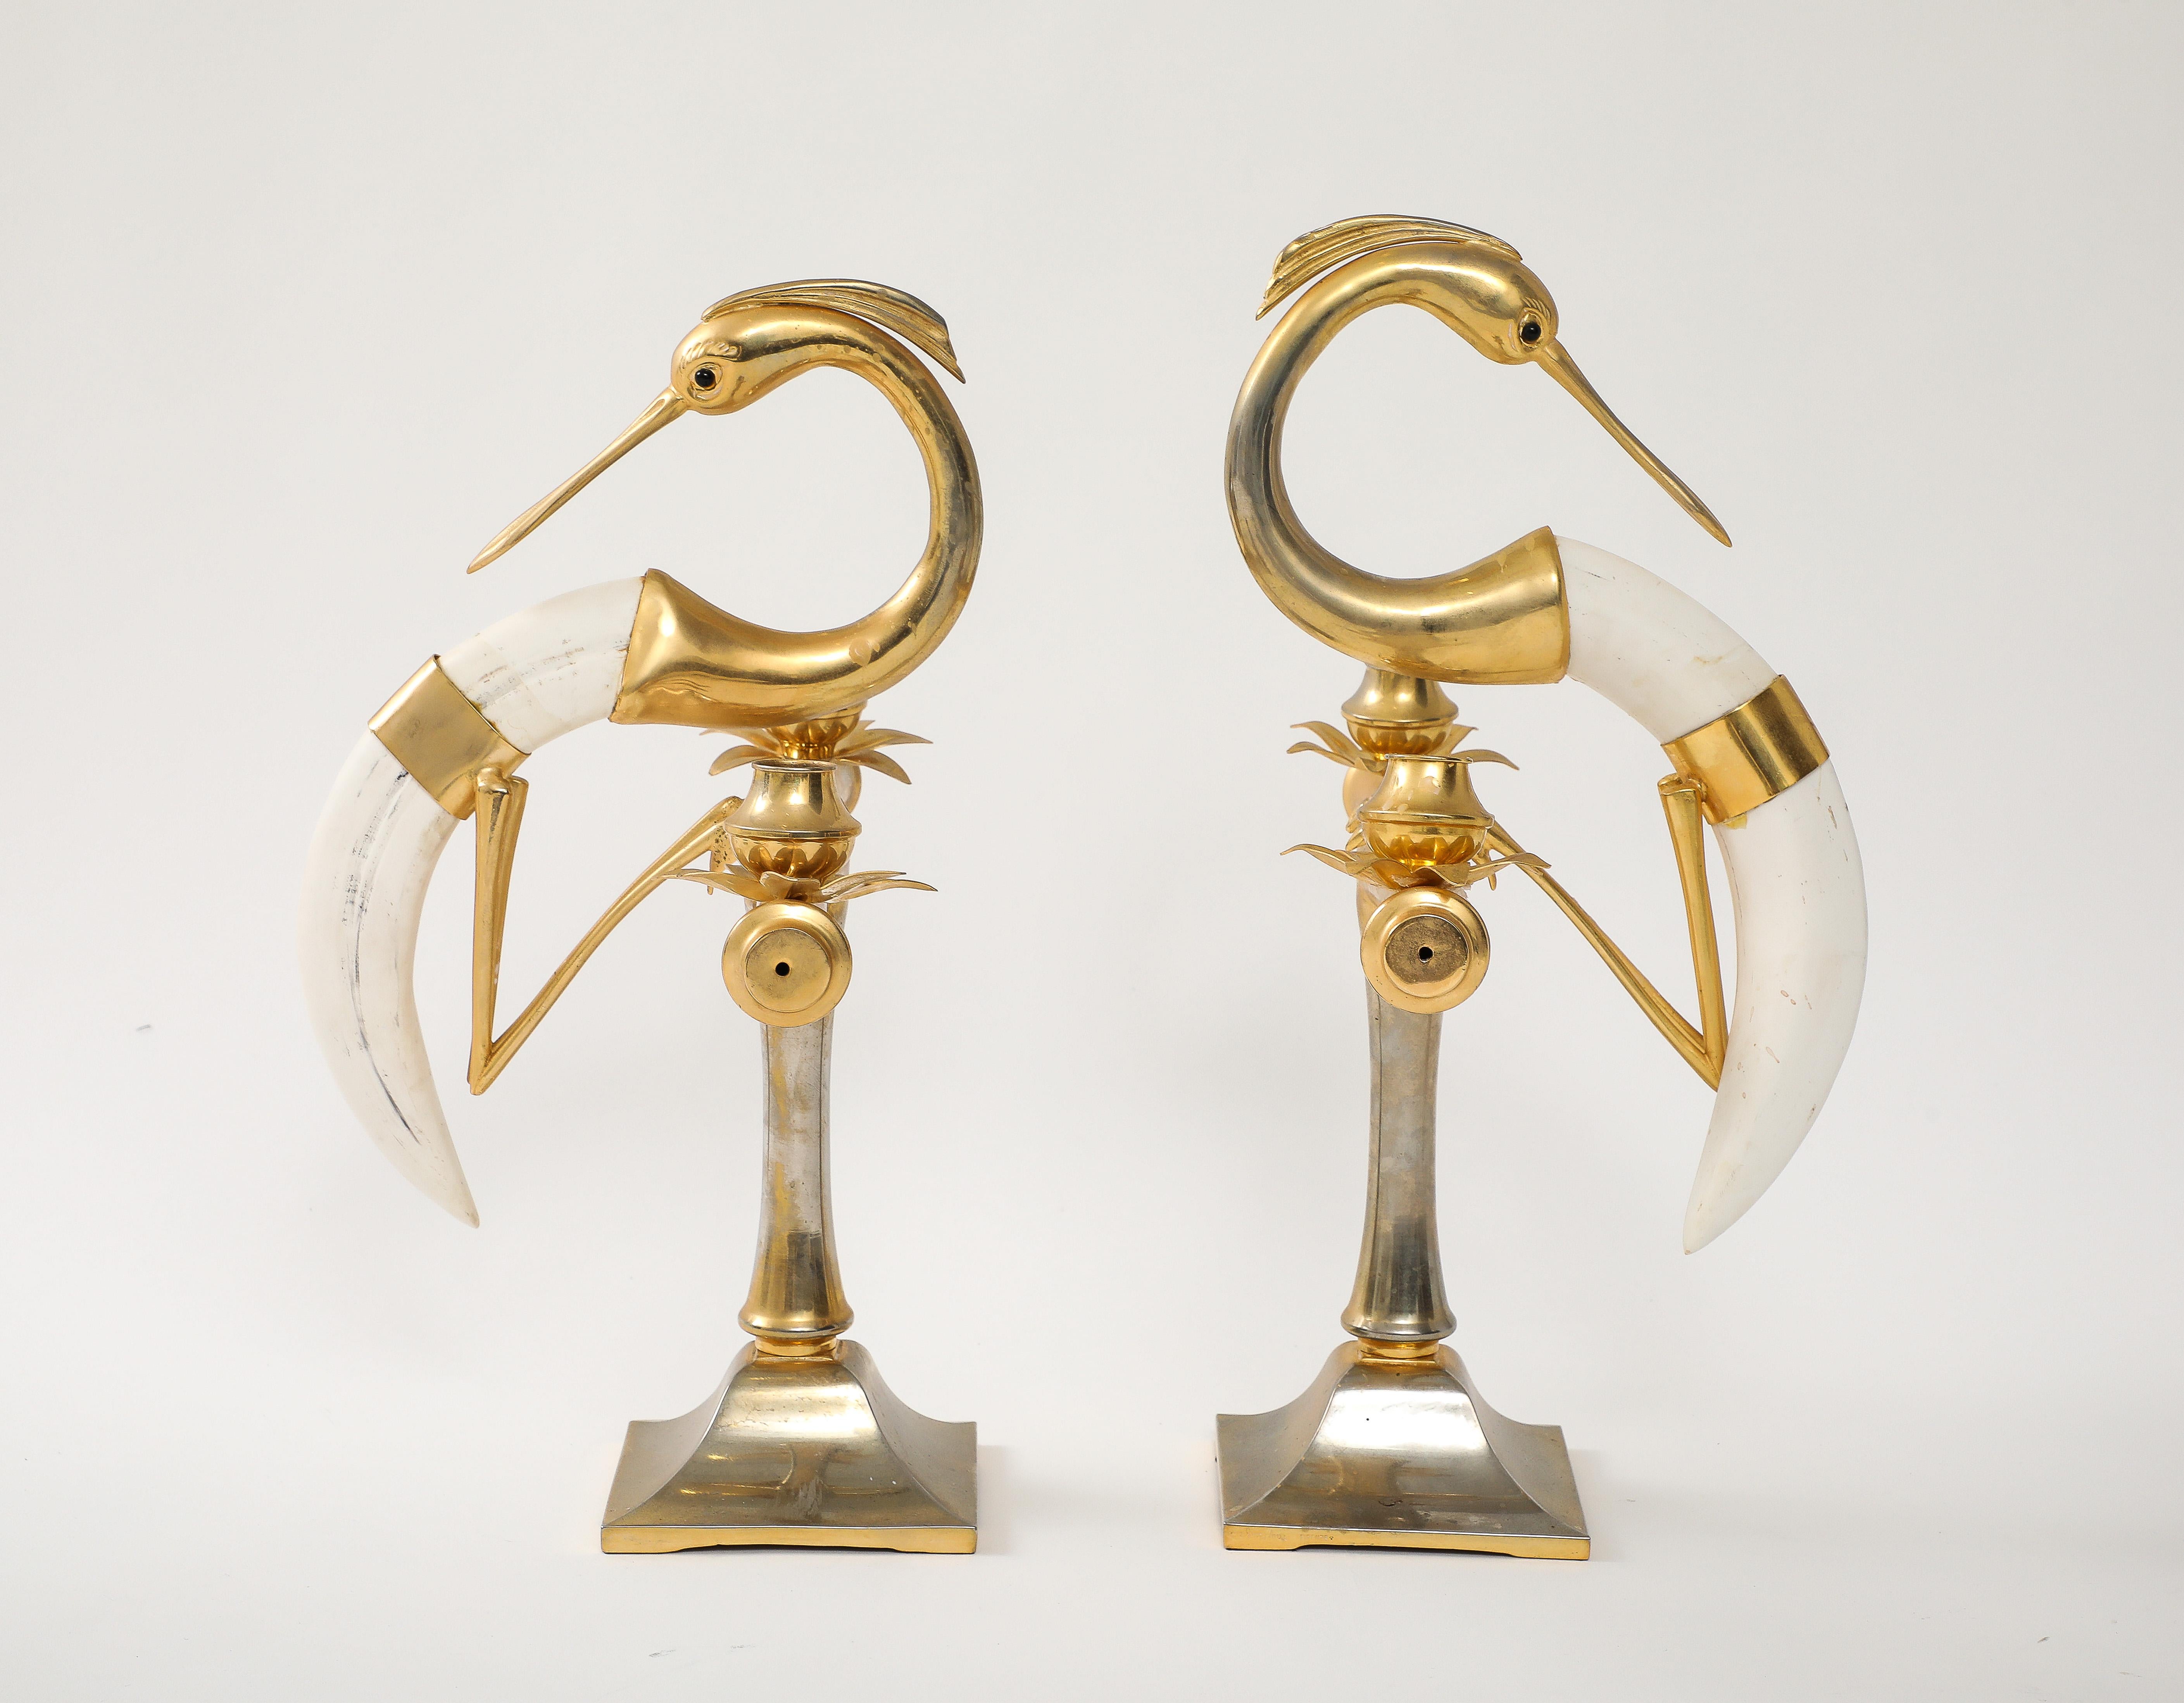 Das Paar zweiflammiger Kandelaber aus vergoldetem Metall und einem Horn aus Kunstharz in Form eines figuralen Kranichs, signiert von Hauy Pouigo.

Basisgröße  4,75